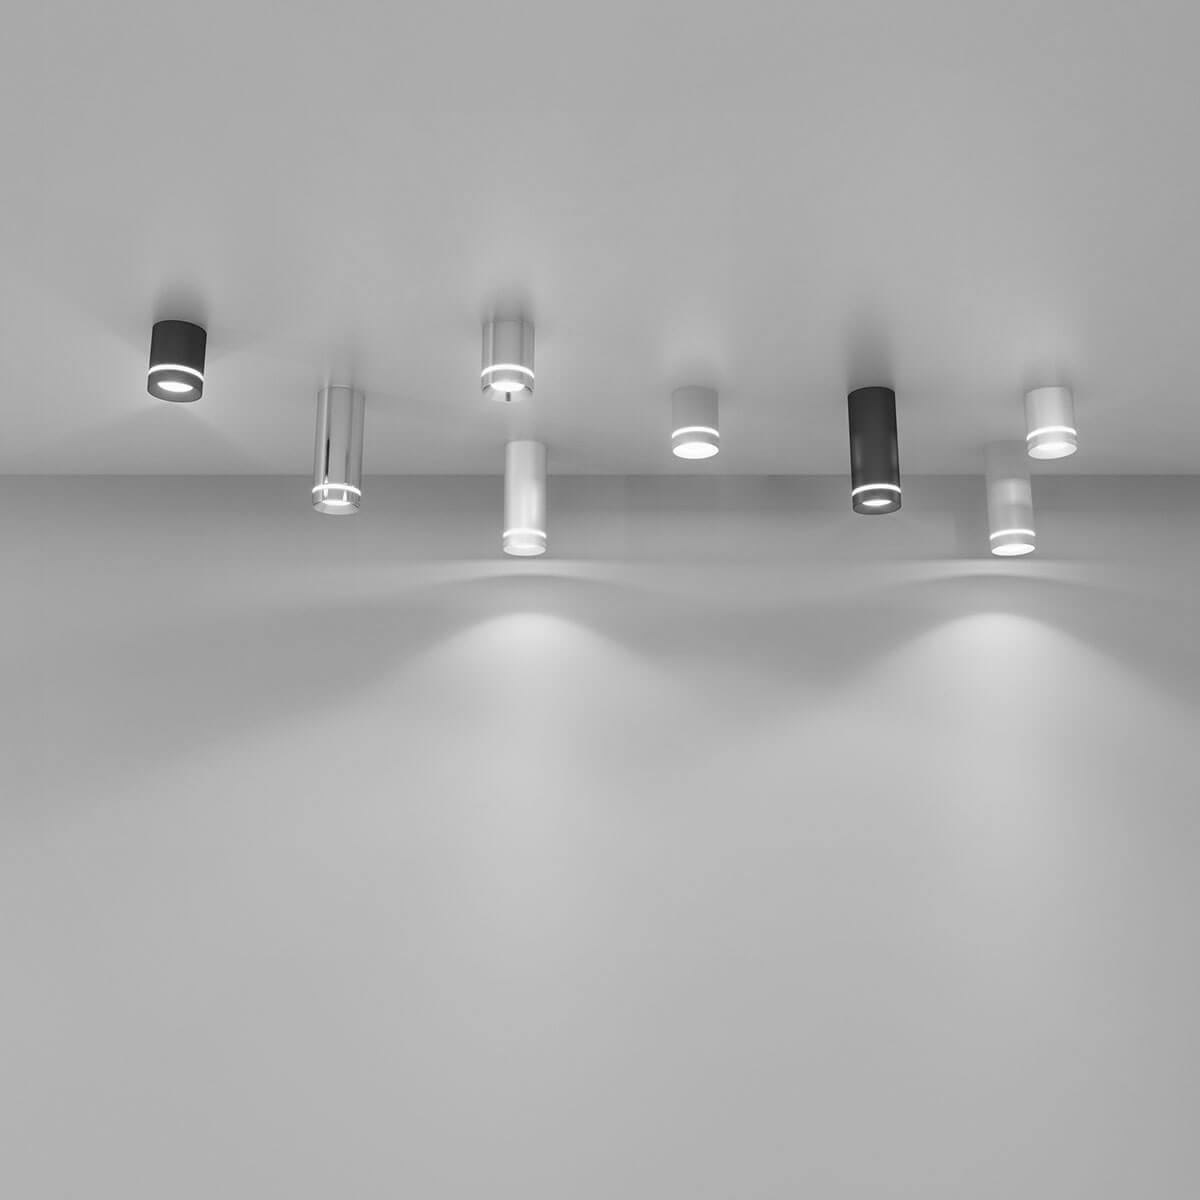 Потолочный светодиодный светильник Elektrostandard DLR022 12W 4200K белый матовый 4690389102974